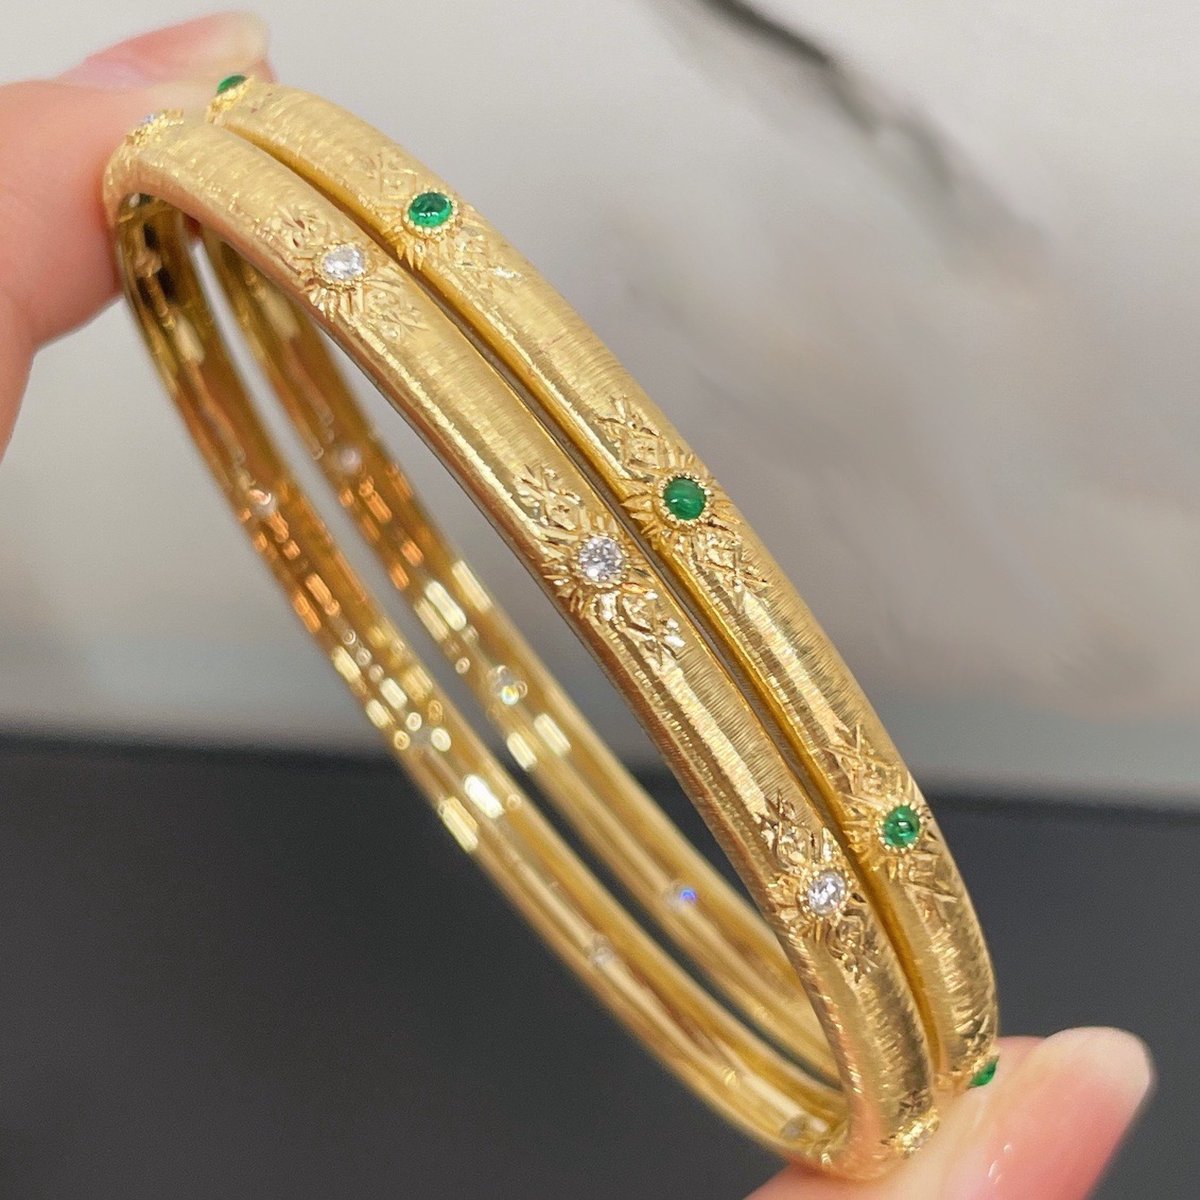 Vintage geïnspireerde armband in Italiaanse stijl - Goud vermeil - smaragd look stenen